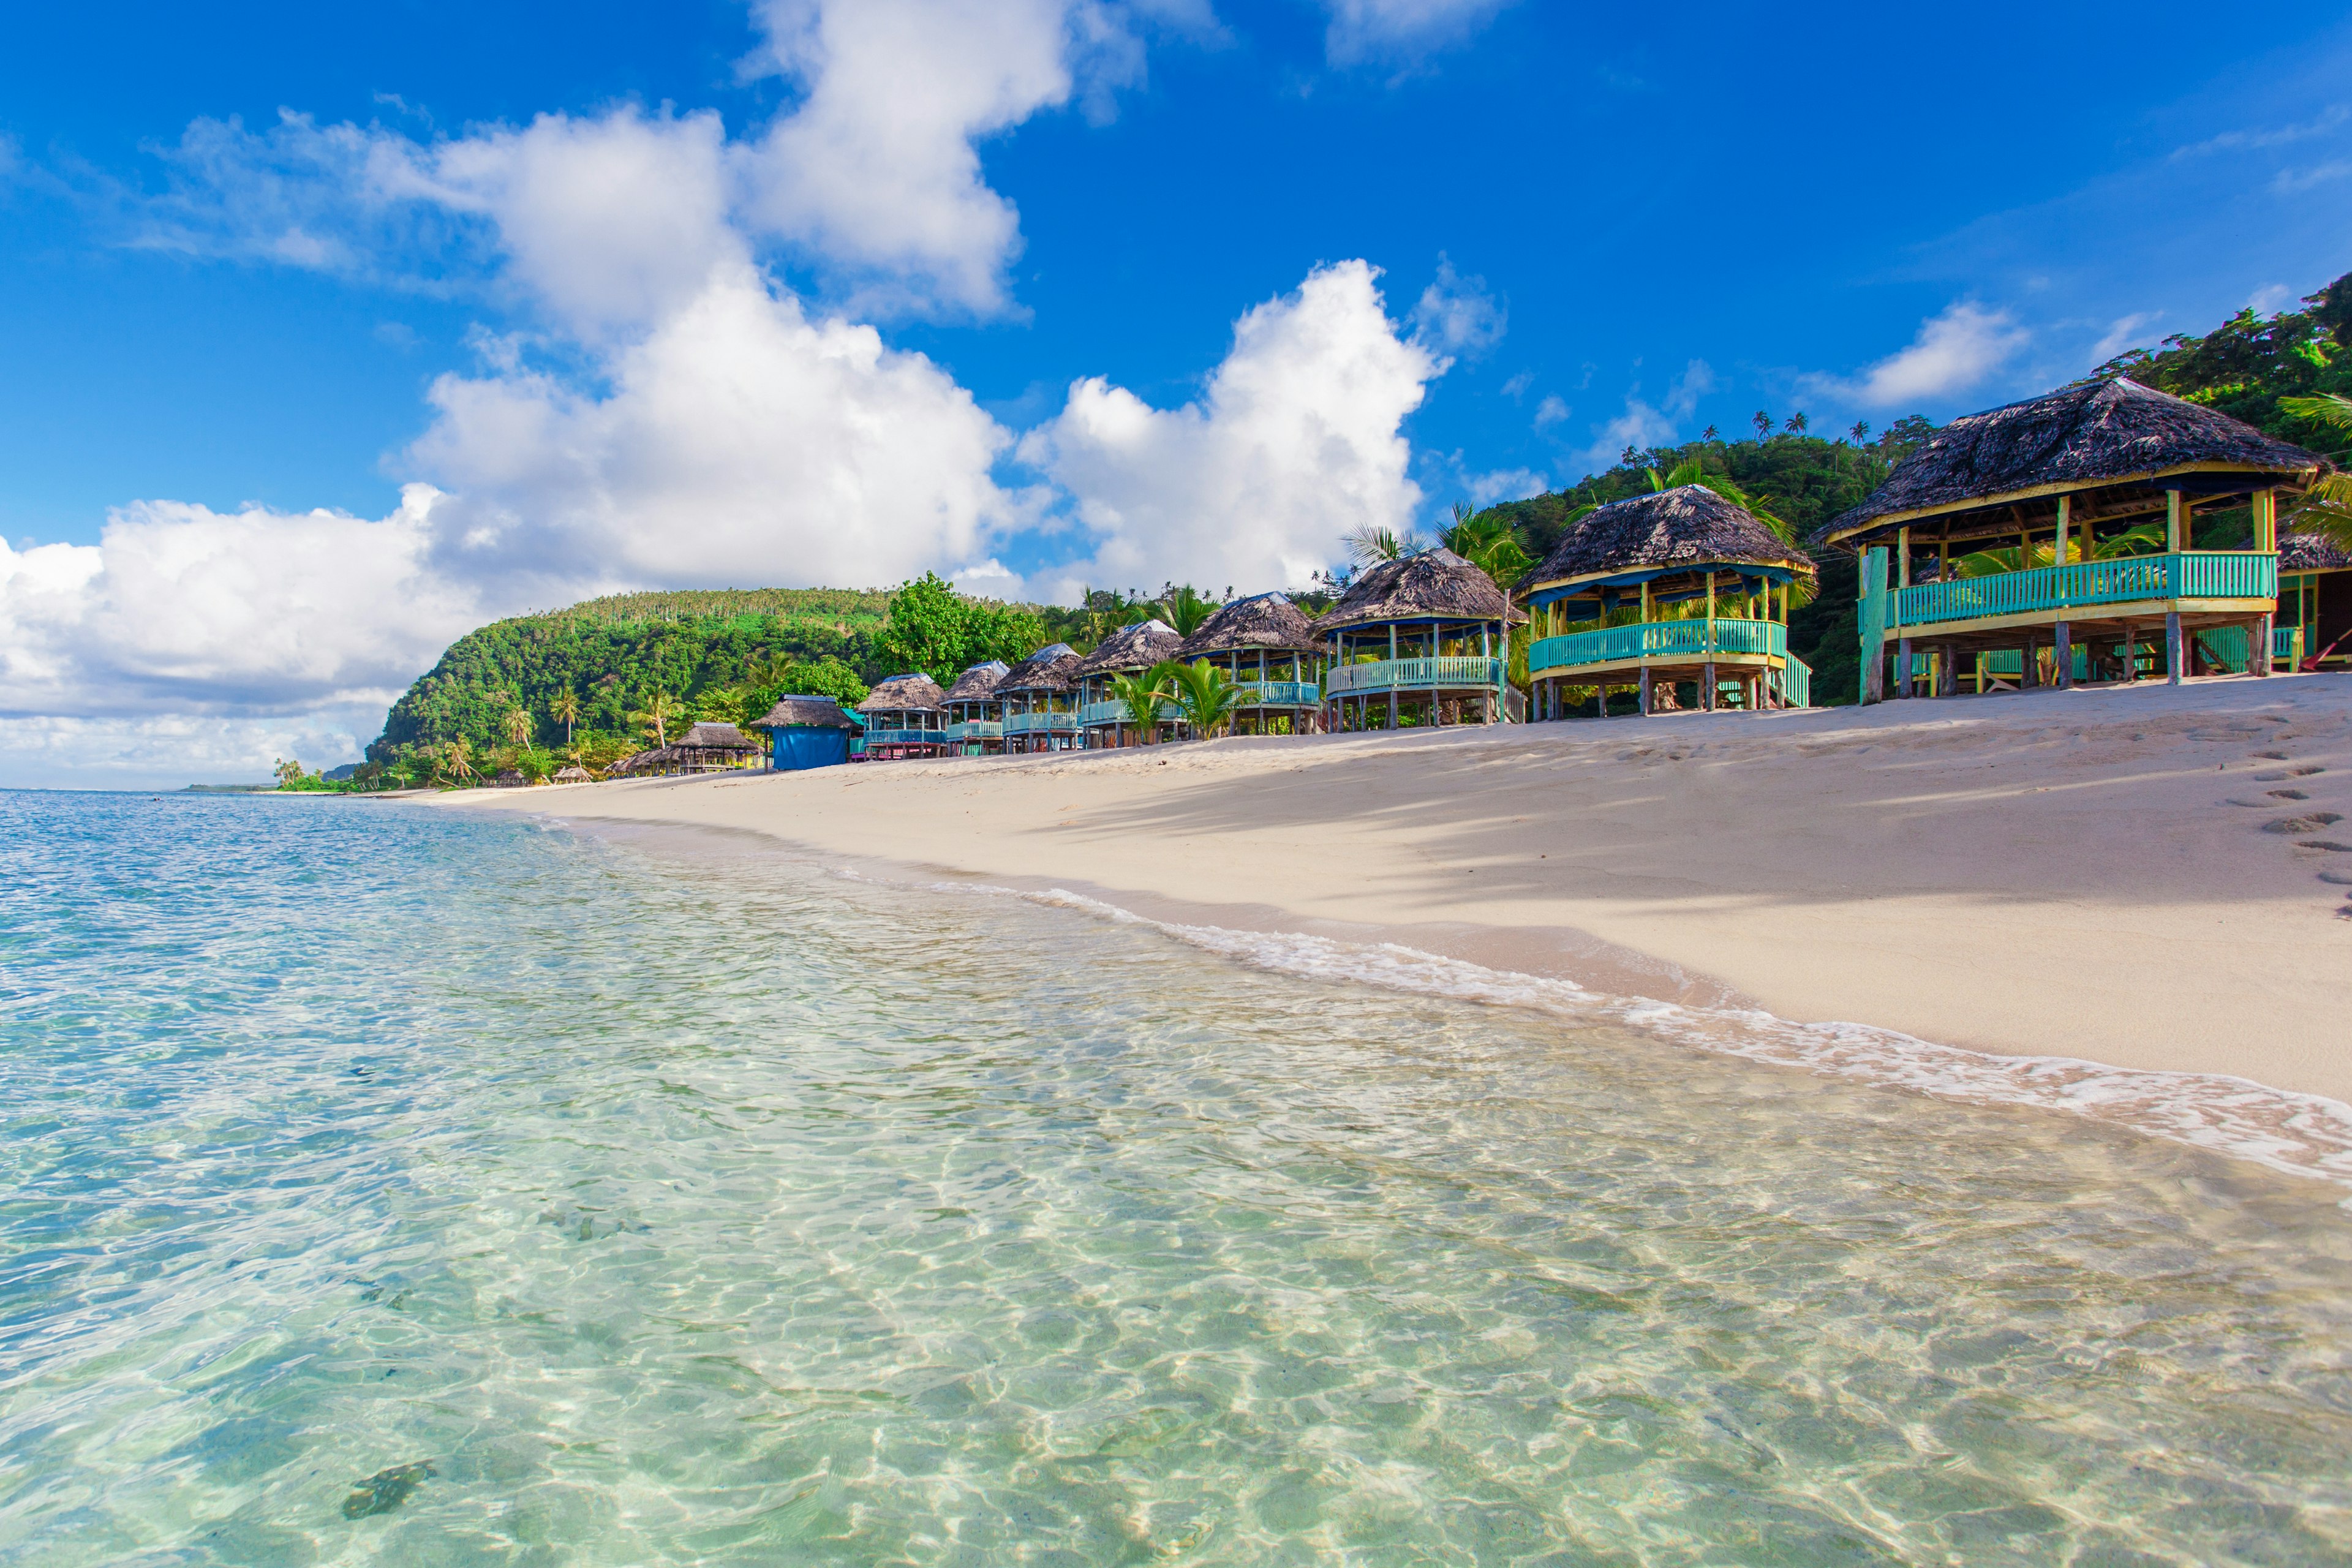 Samoan beach fales